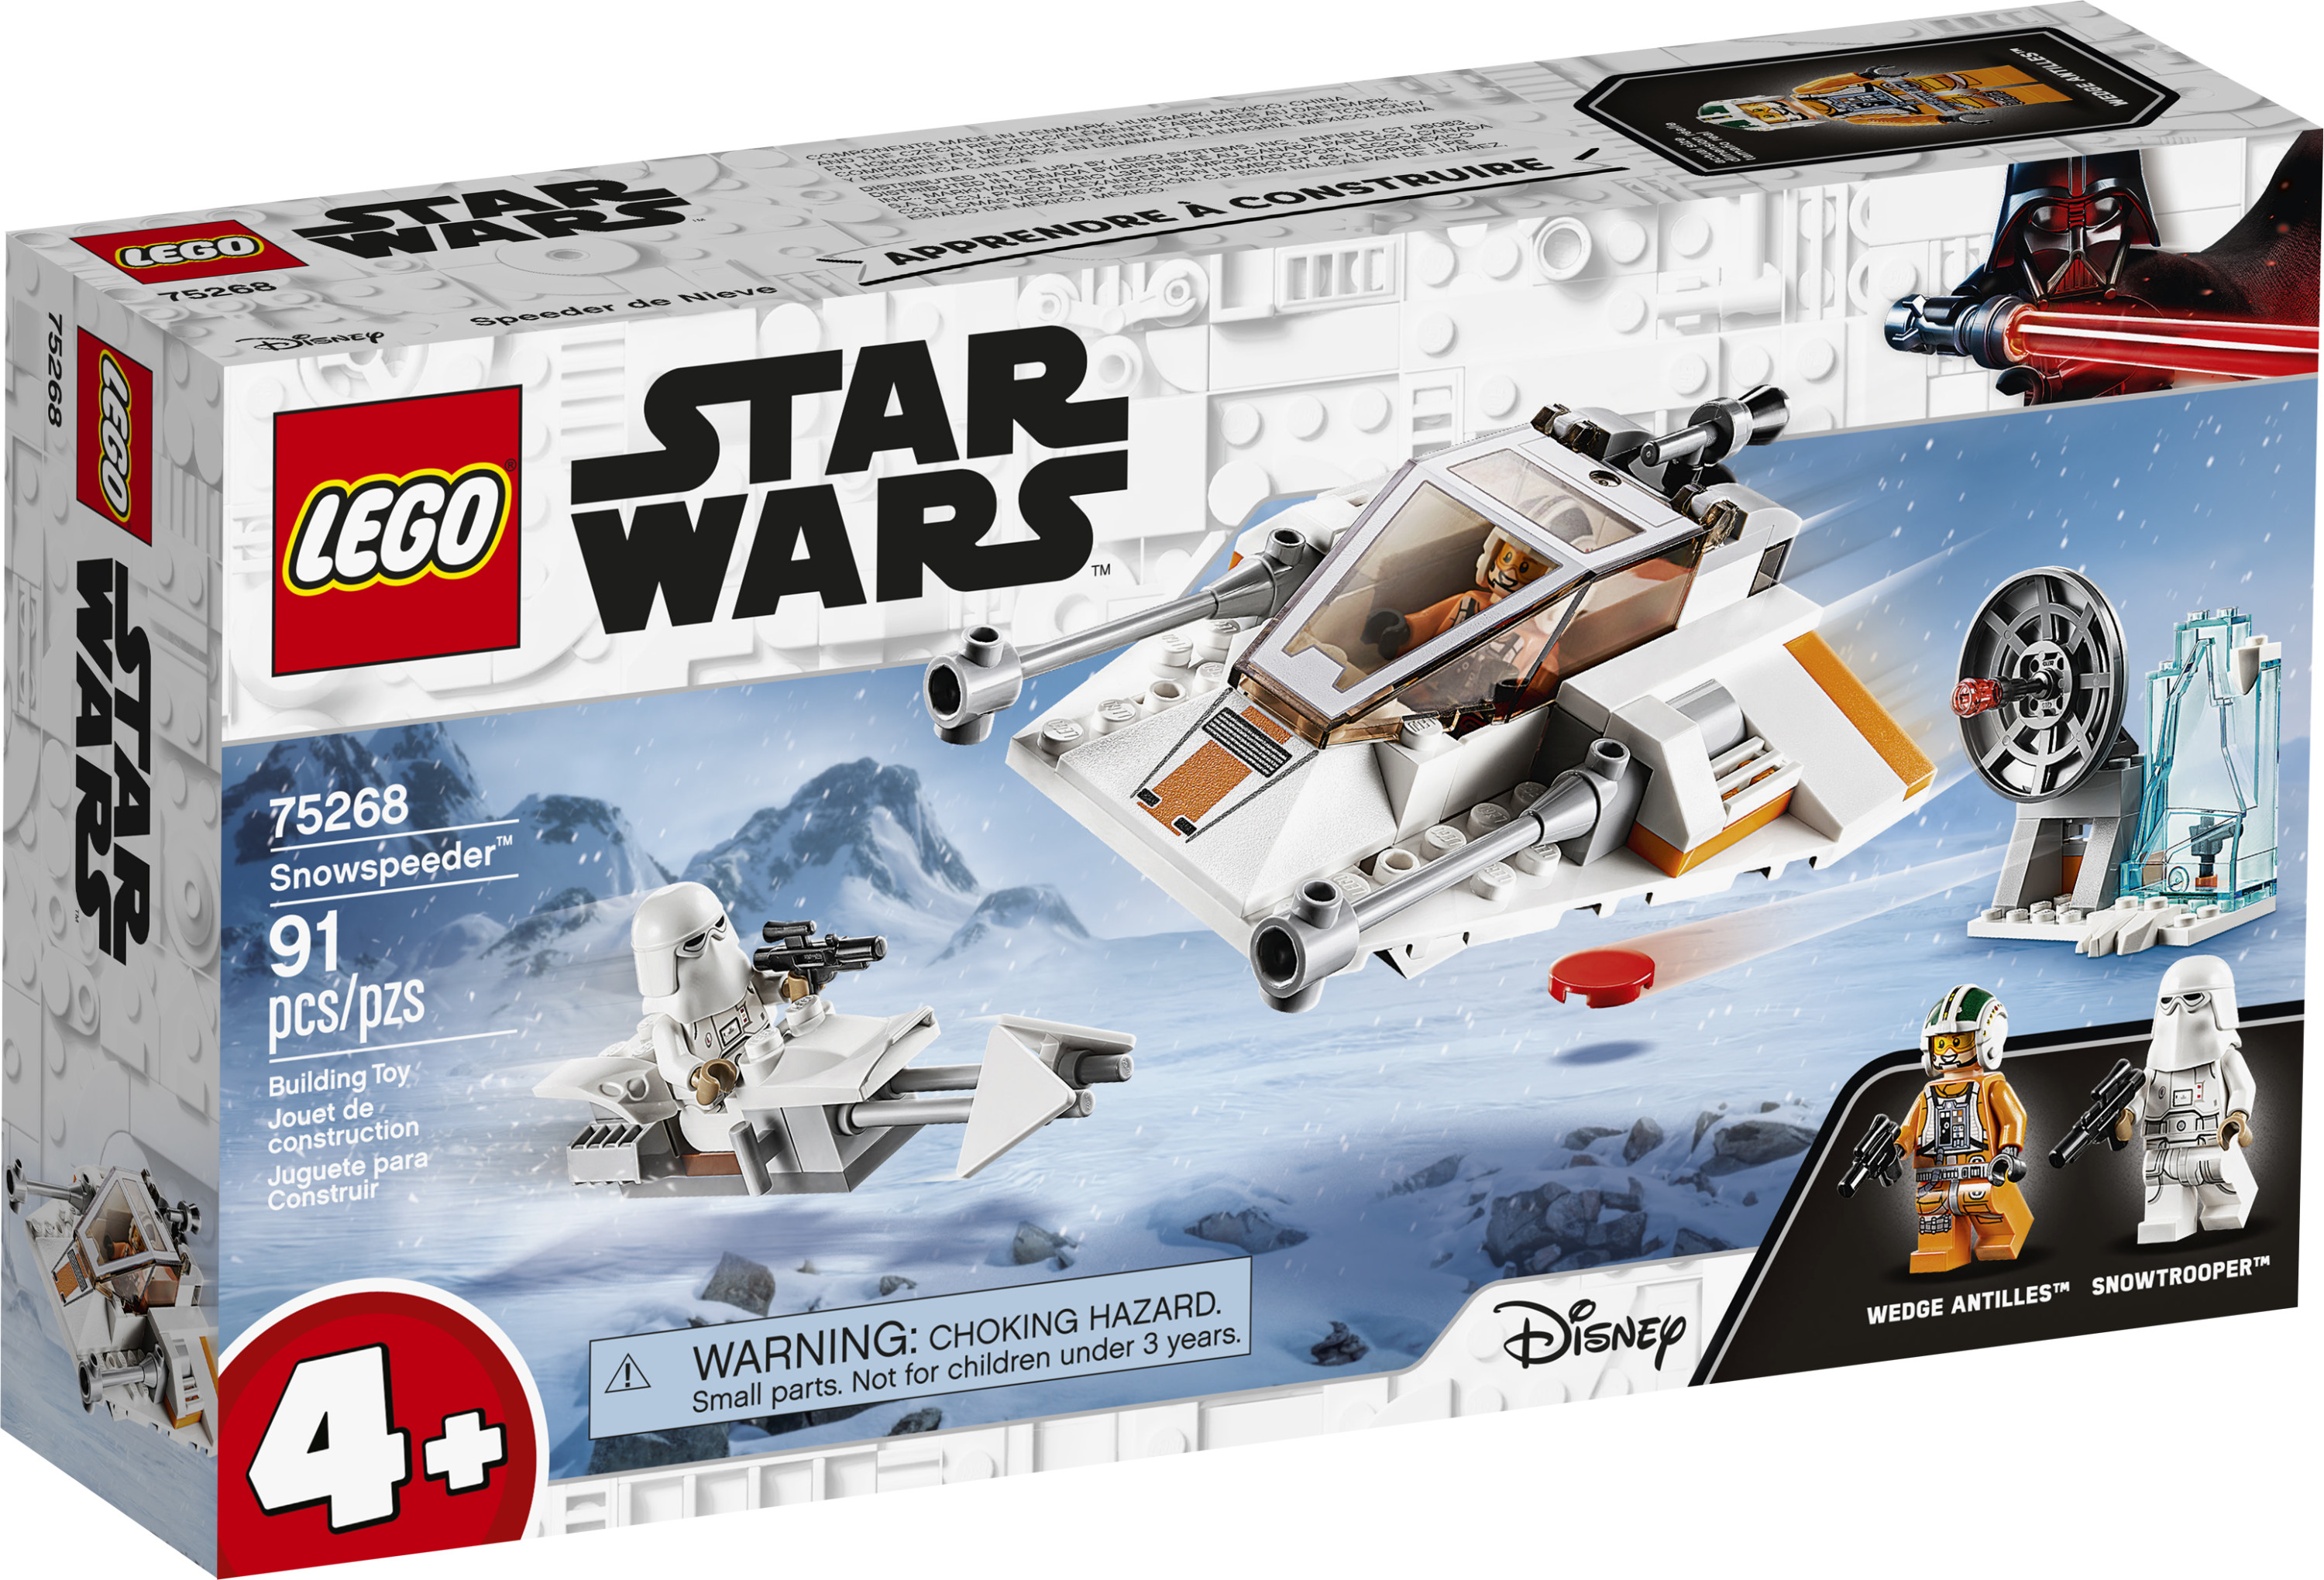 LEGO Star Wars Snowspeeder 75268 Starship Creative Building Toy for Preschool Children 4+ (91 pieces) - image 5 of 7